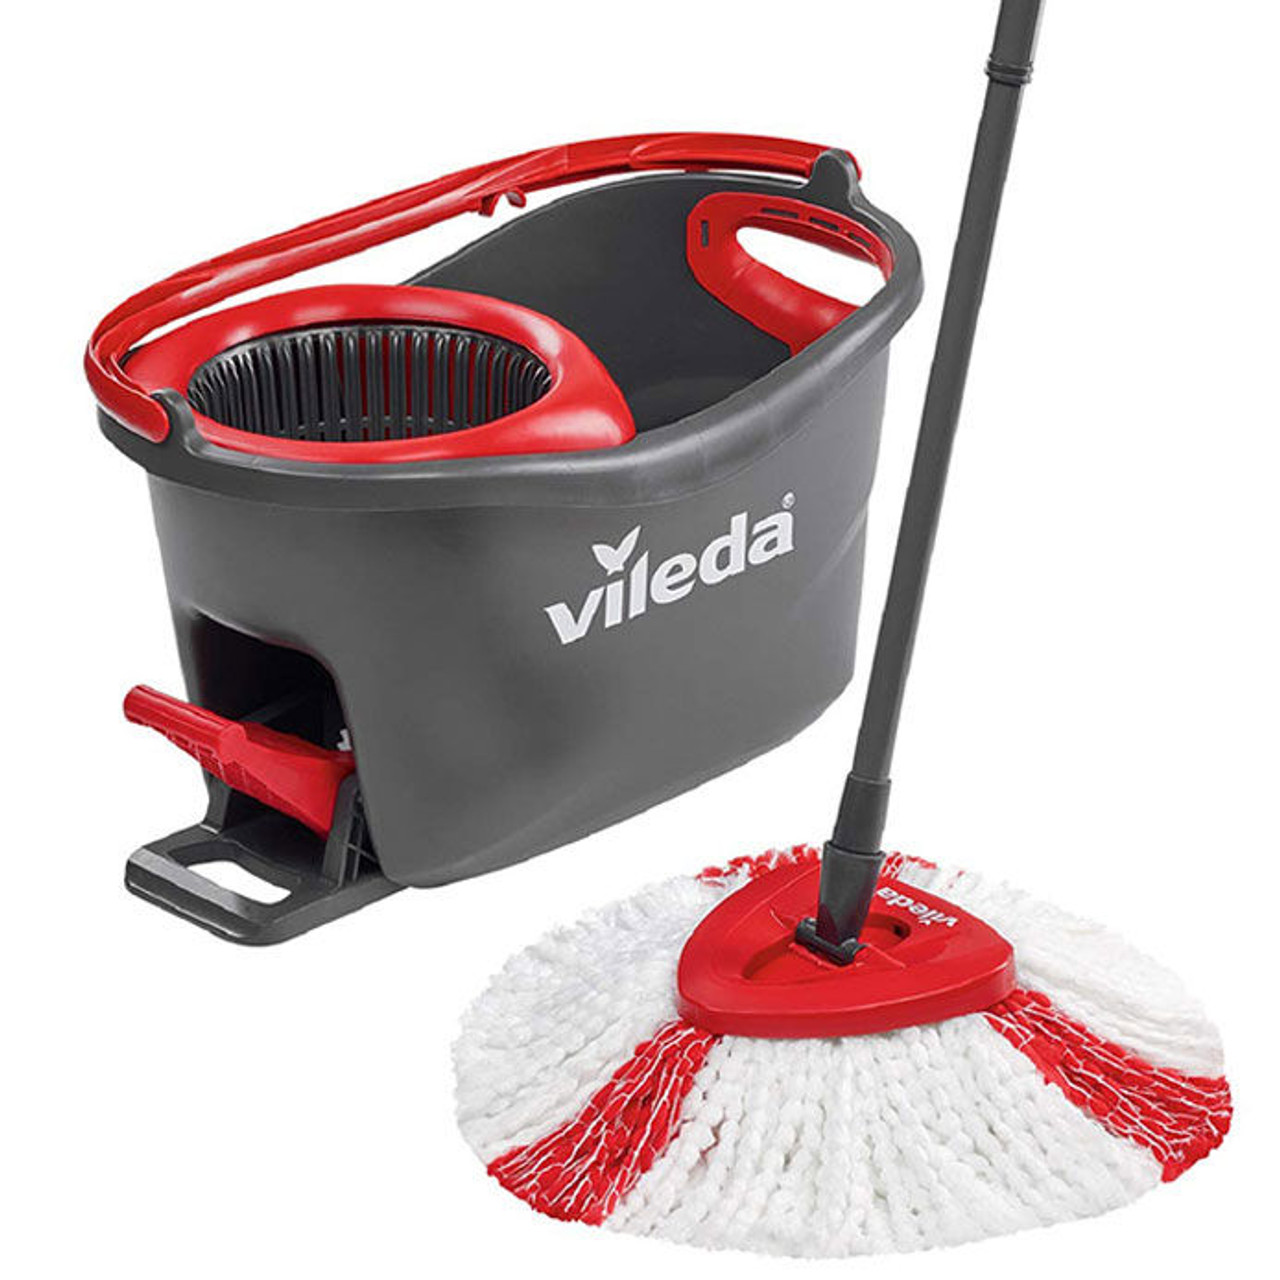 Vileda Turbo Spin Mop and Bucket Set - Laundry Company